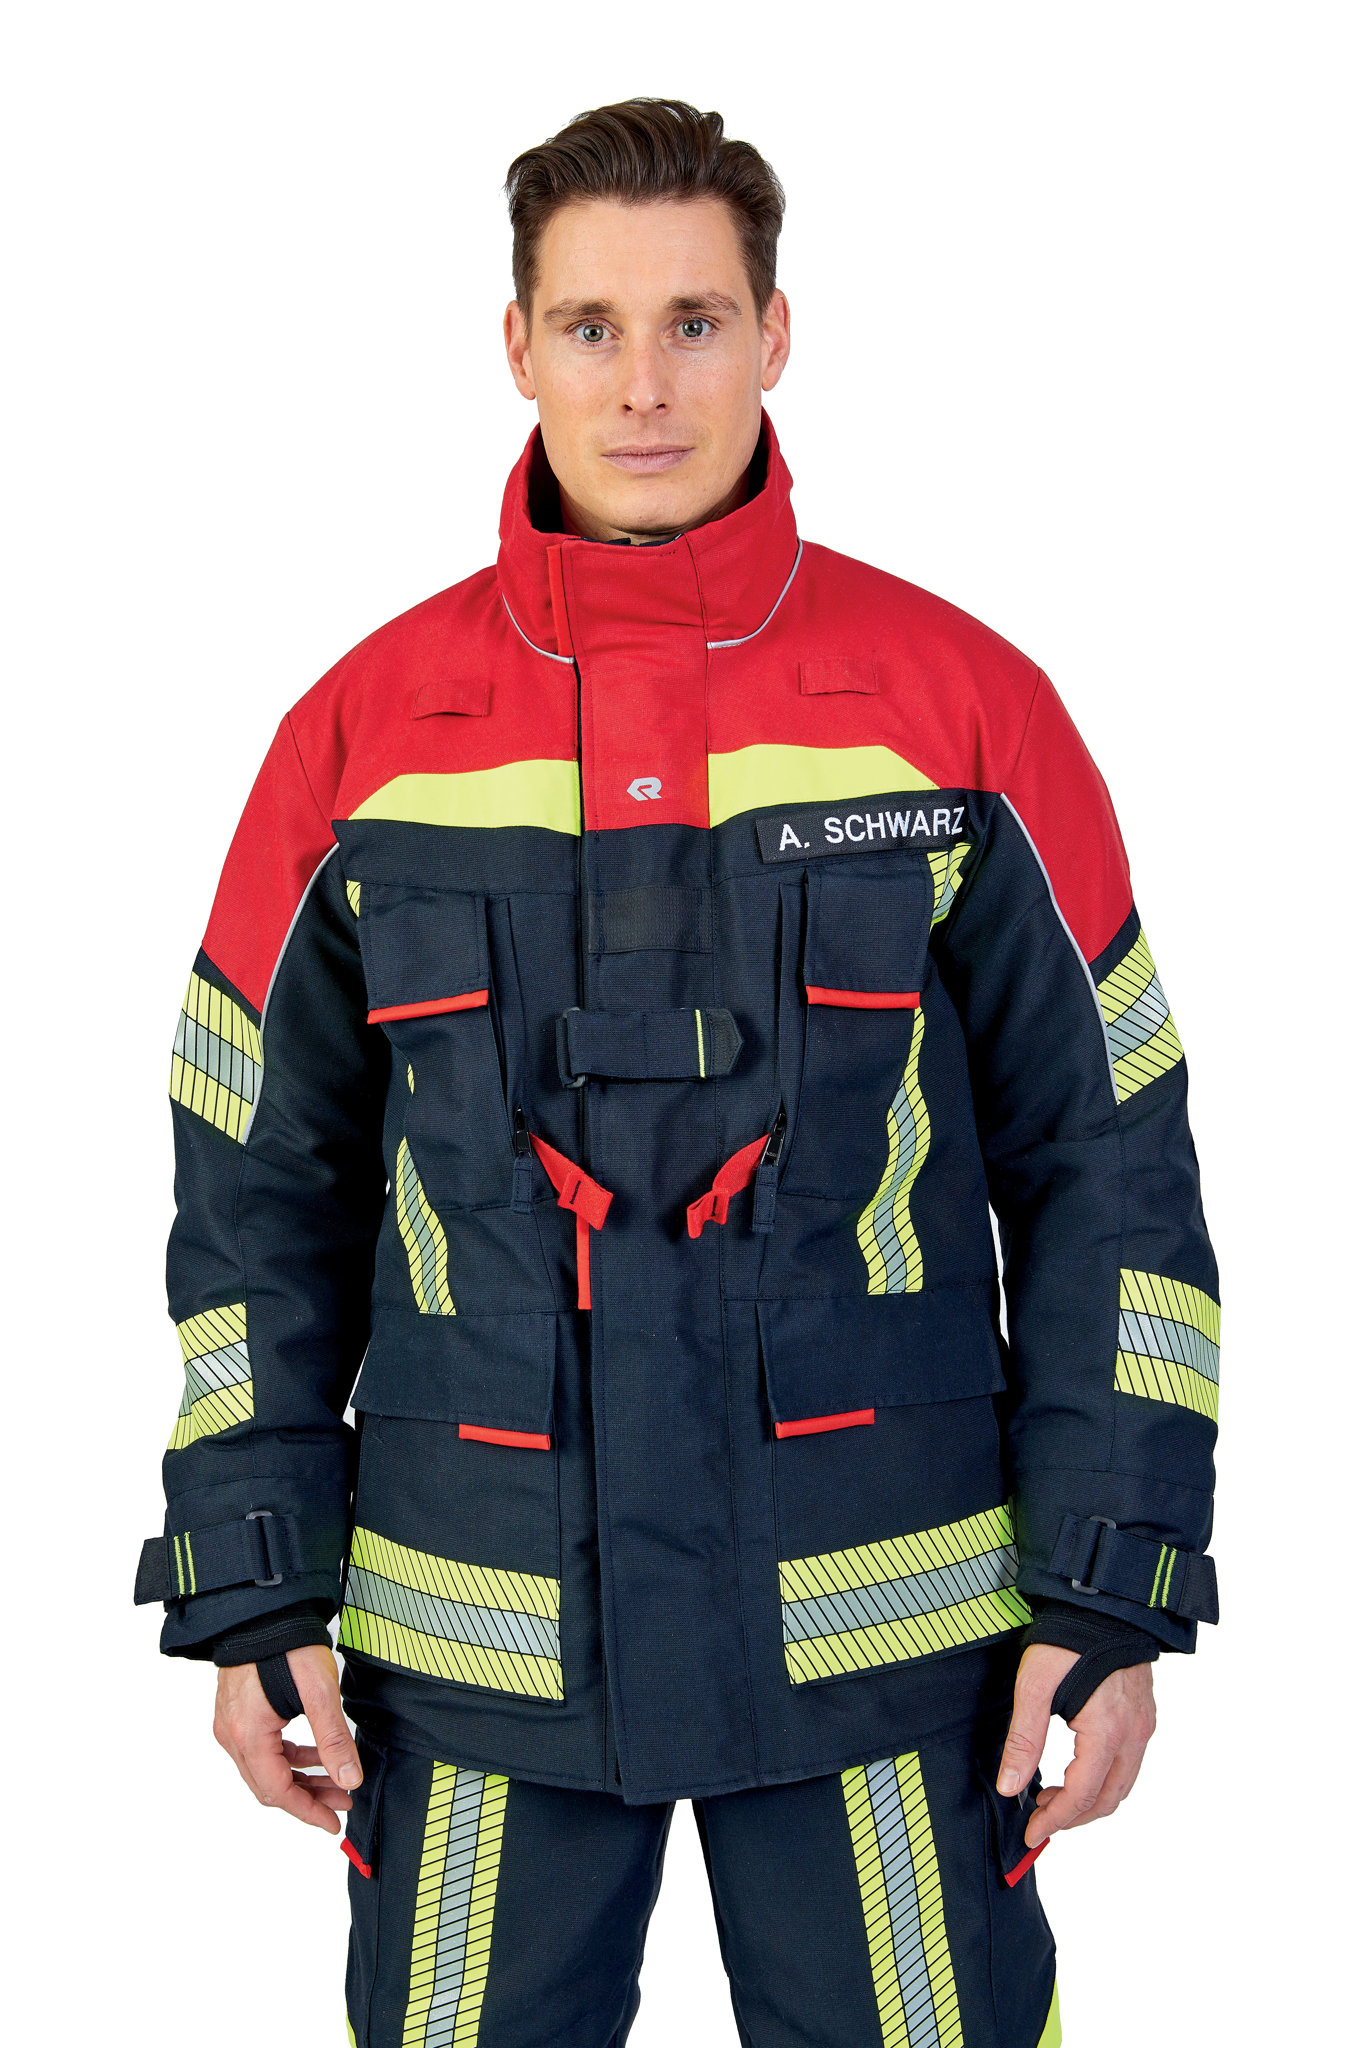 Bild von ROSENBAUER Feuerwehreinsatzjacke FIRE FLEX, NOMEX NXT, schwarzblau/rot, Gr. 56-58 B